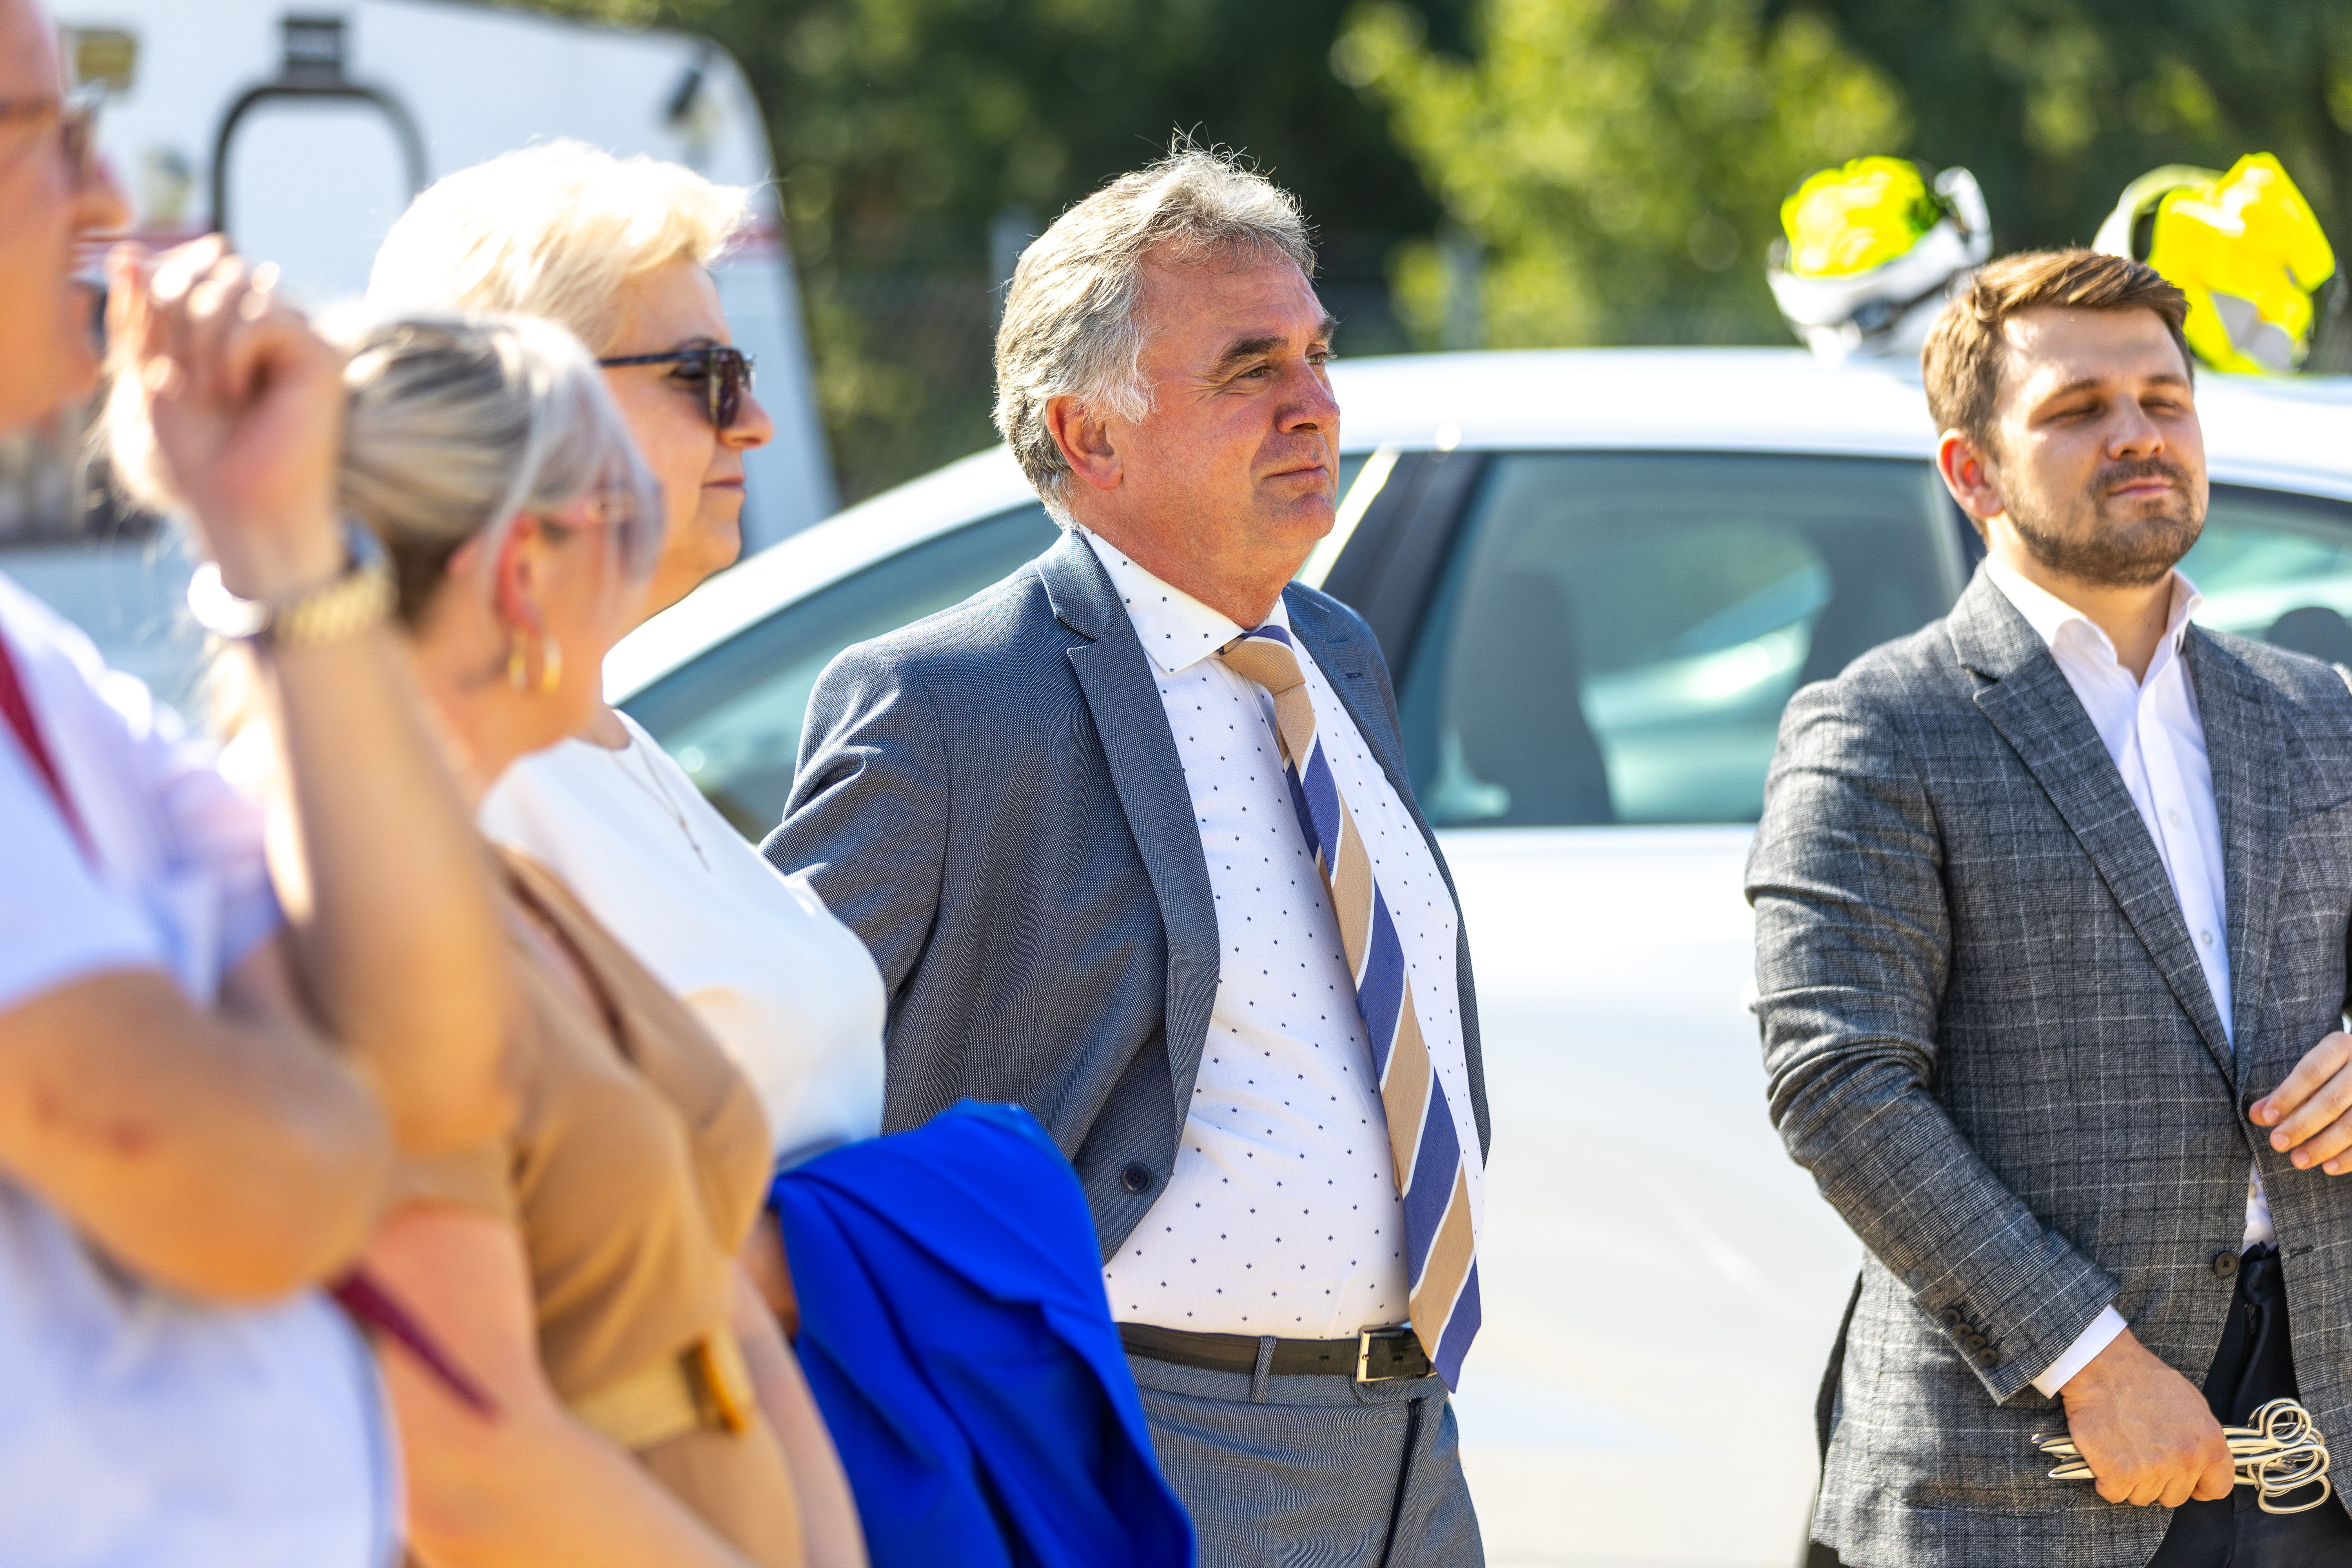 Burmistrz Margonina Janusz Piechocki wśród 4 innych osób stojących przed białym samochodem